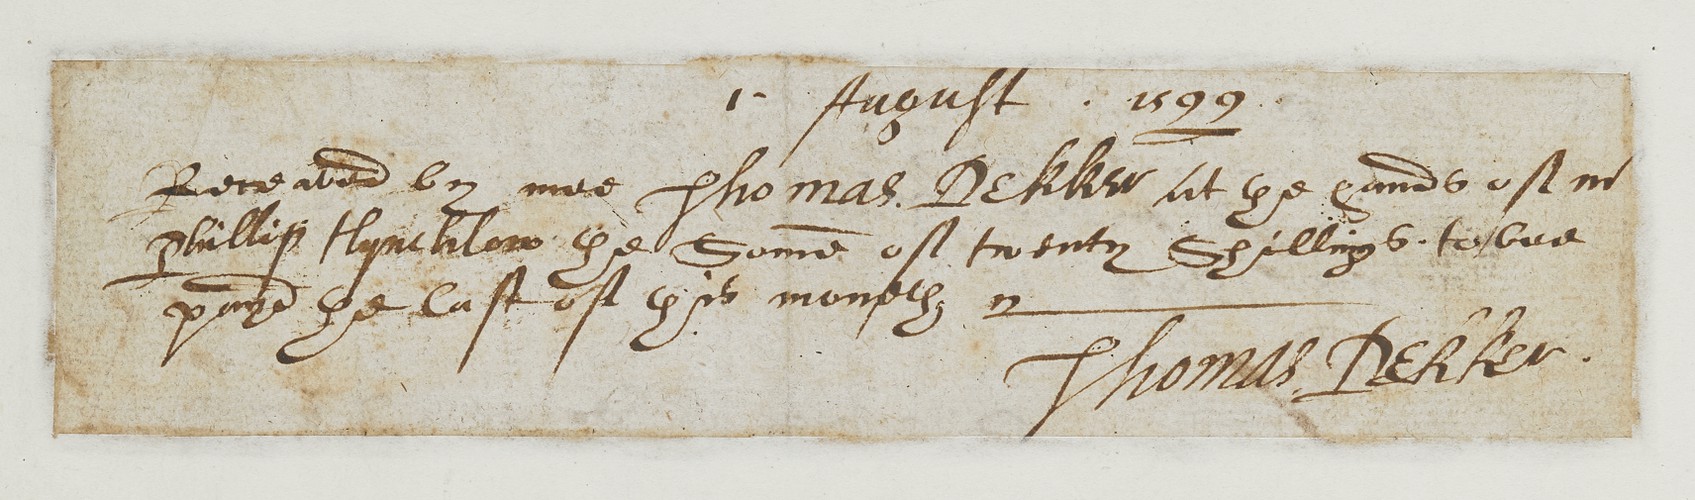 Receipt by Thomas Dekker, August 1599